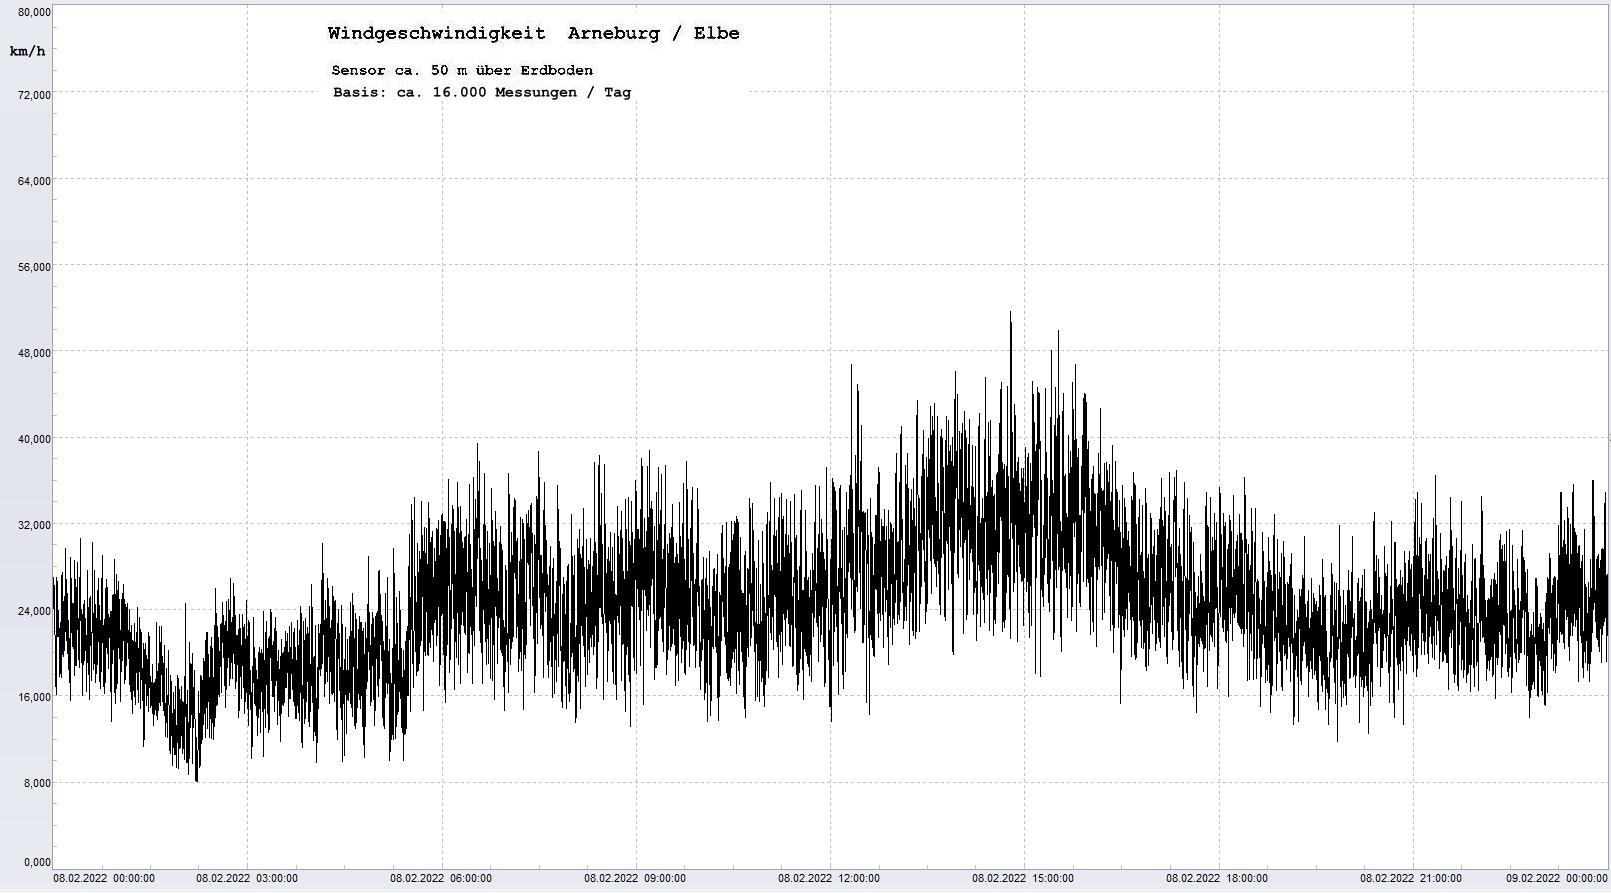 Arneburg Tages-Diagramm Winddaten, 08.02.2022
  Diagramm, Sensor auf Gebäude, ca. 50 m über Erdboden, Basis: 5s-Aufzeichnung